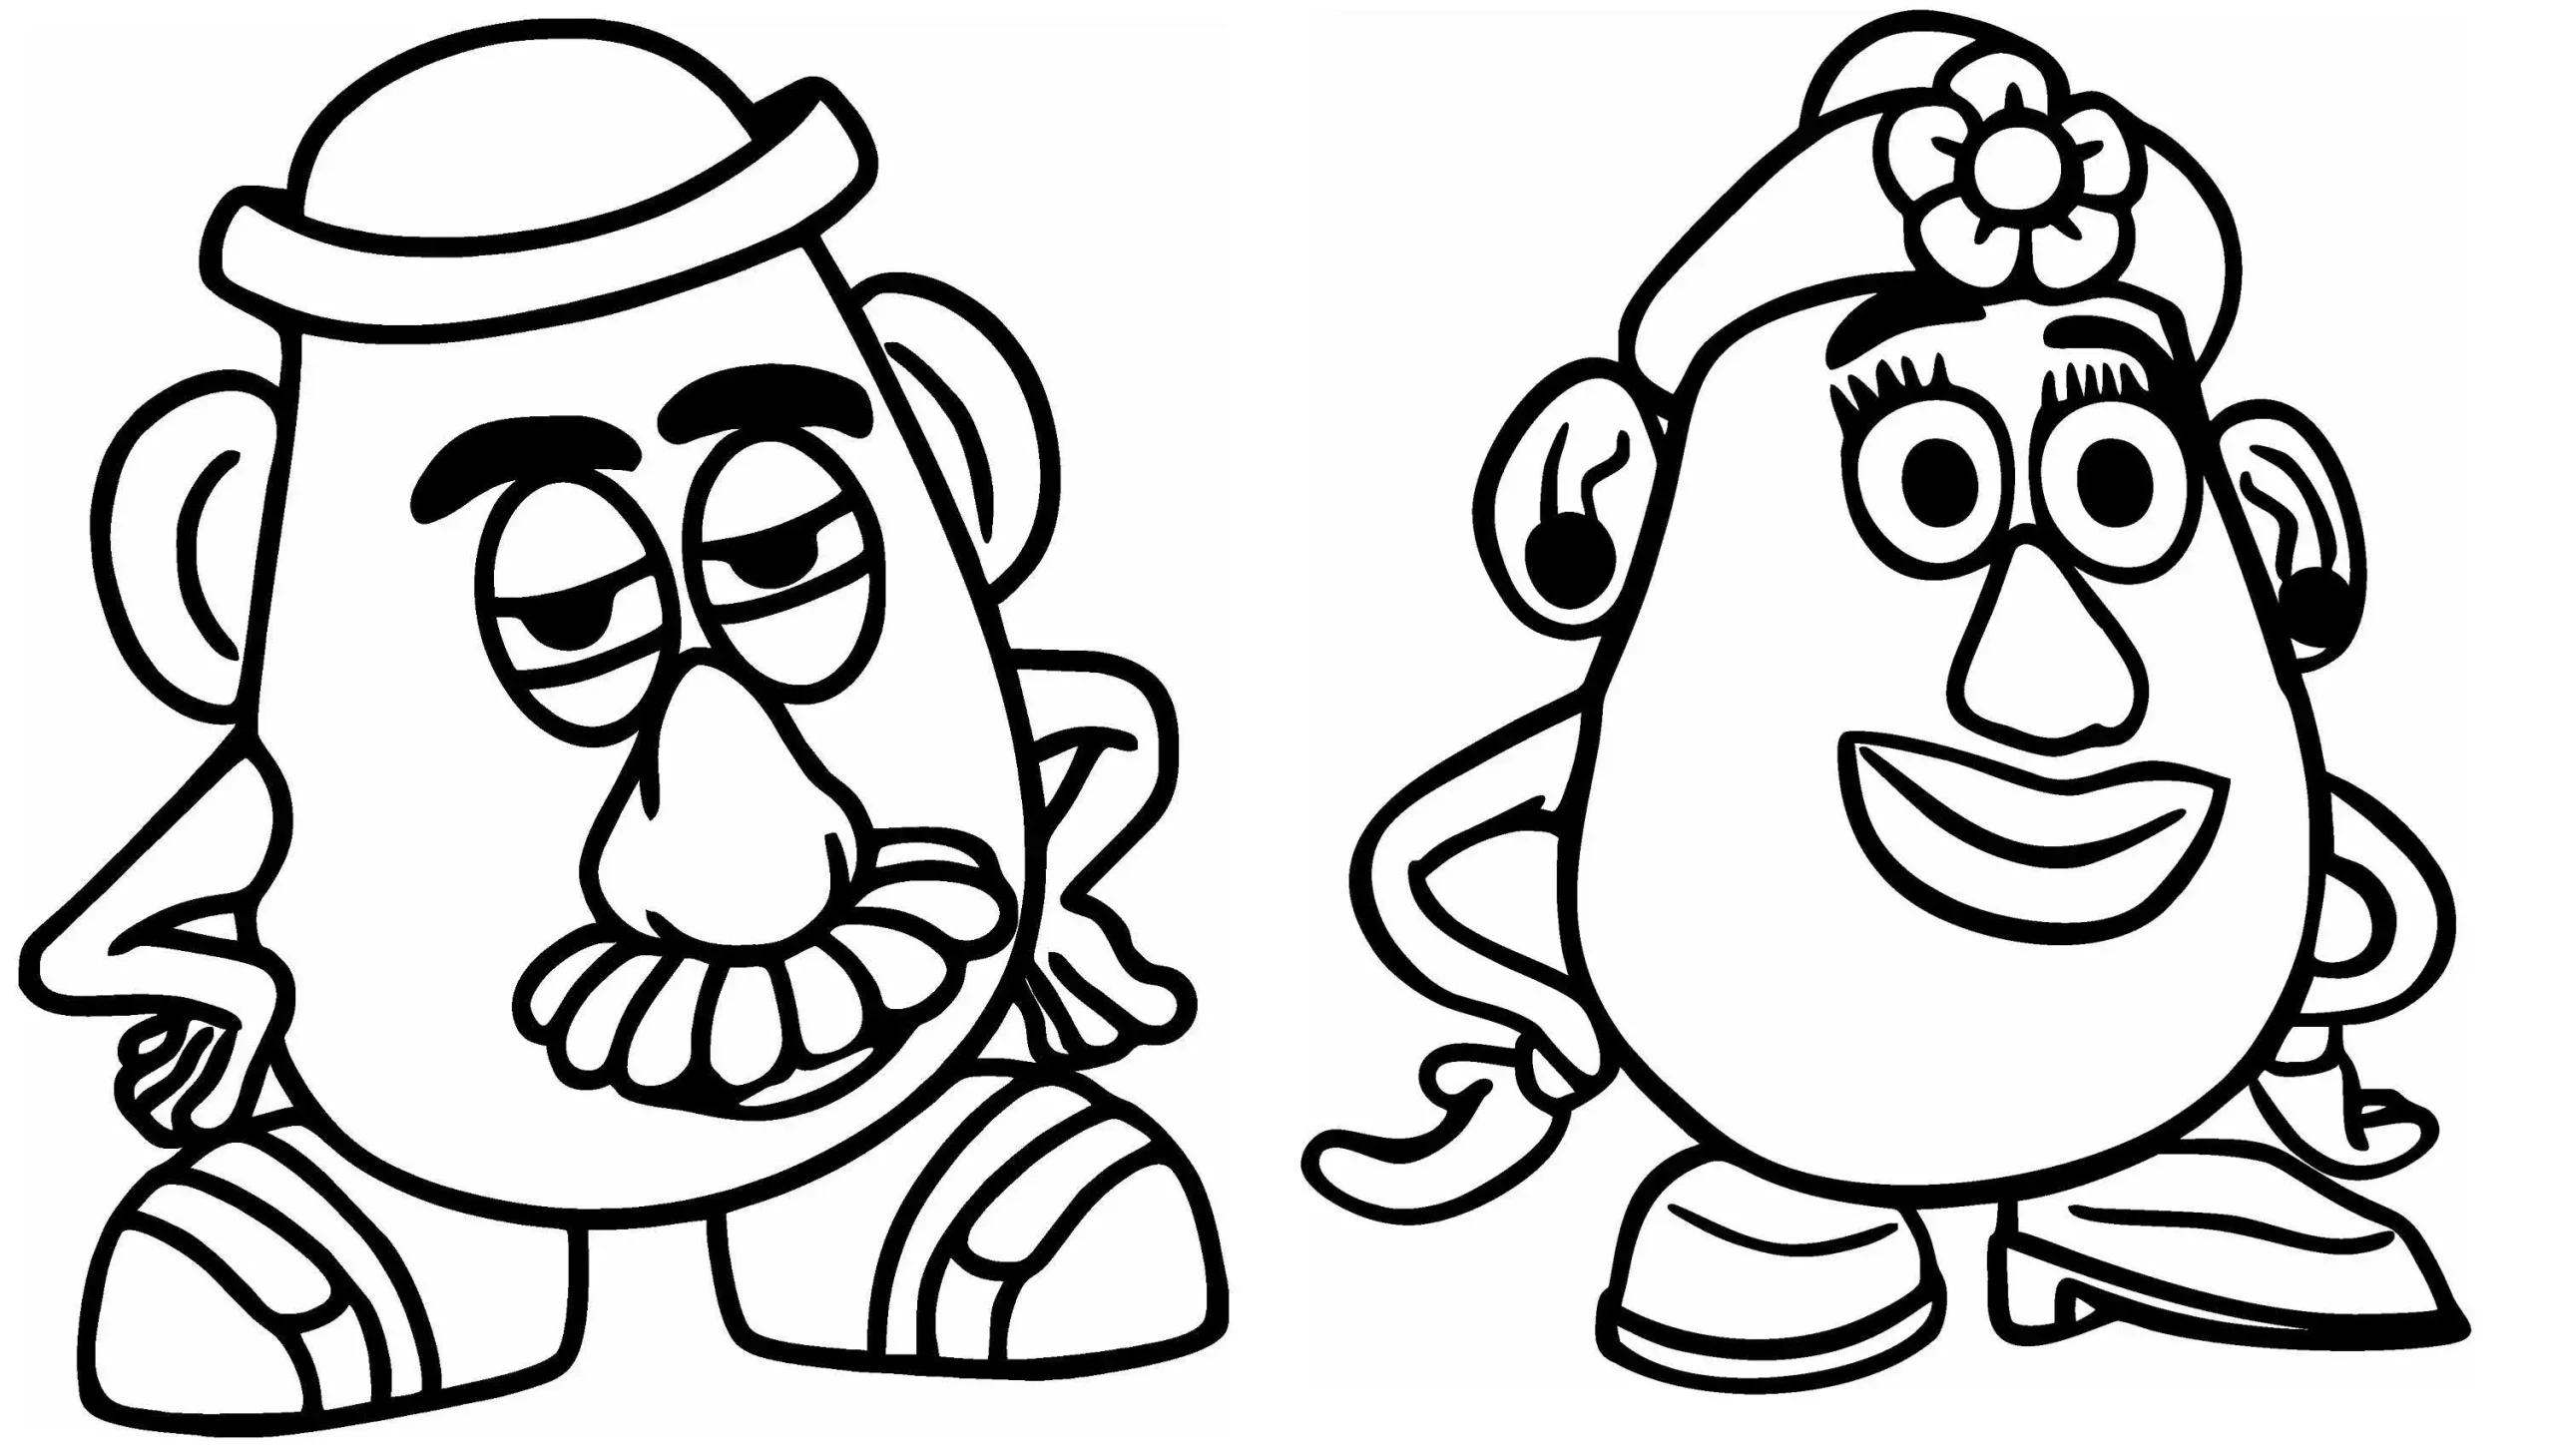 Fichas imprimibles gratuitas de Mr. Potato Head Toy Story